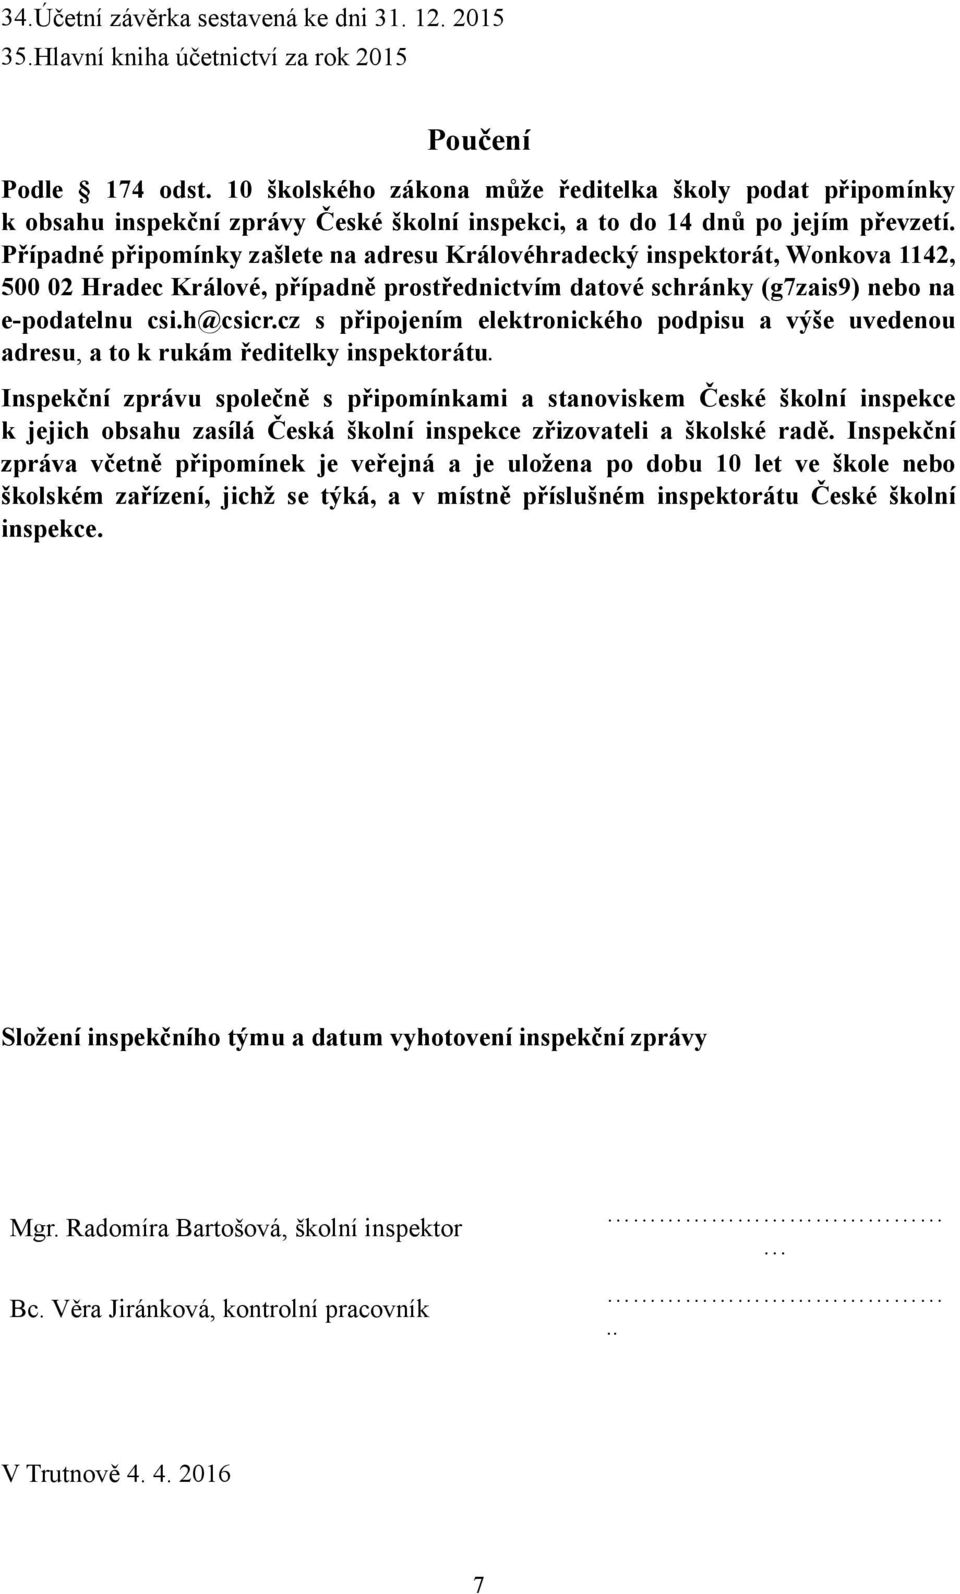 Případné připomínky zašlete na adresu Královéhradecký inspektorát, Wonkova 1142, 500 02 Hradec Králové, případně prostřednictvím datové schránky (g7zais9) nebo na e-podatelnu csi.h@csicr.